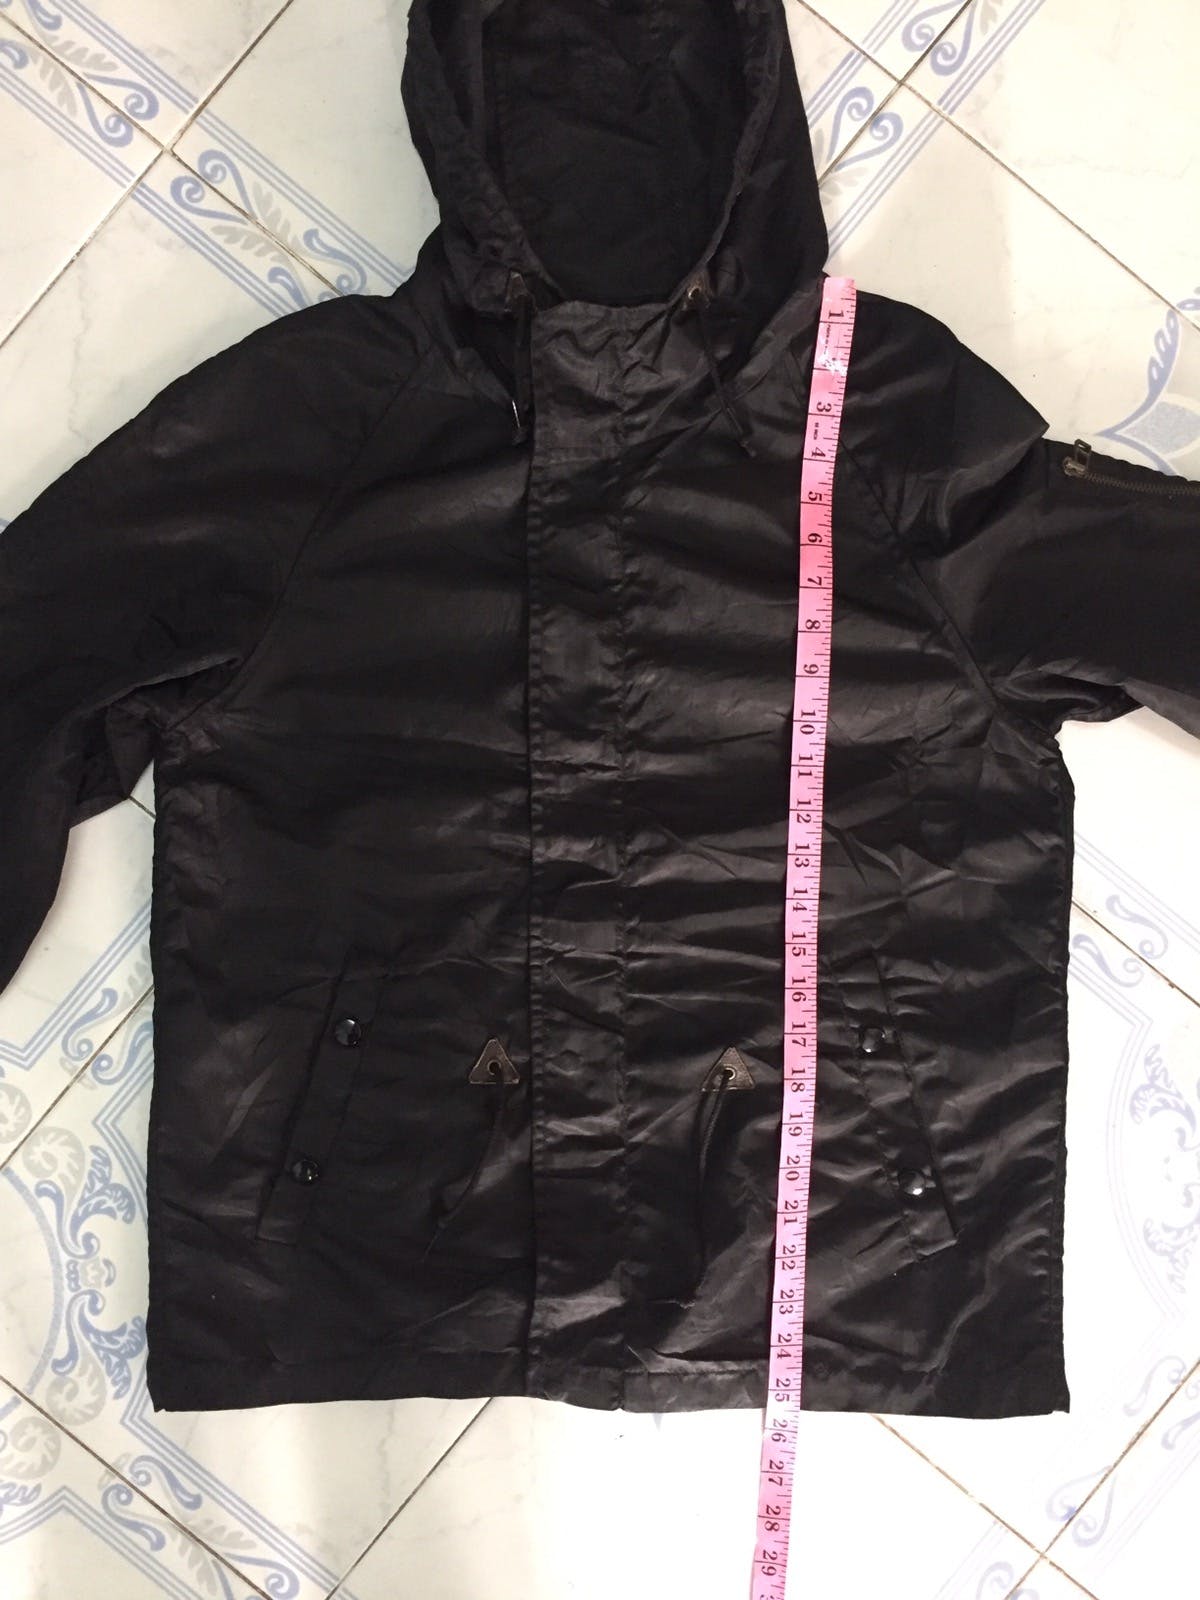 Nylon Schott combat type jacket cap hoodie - 24